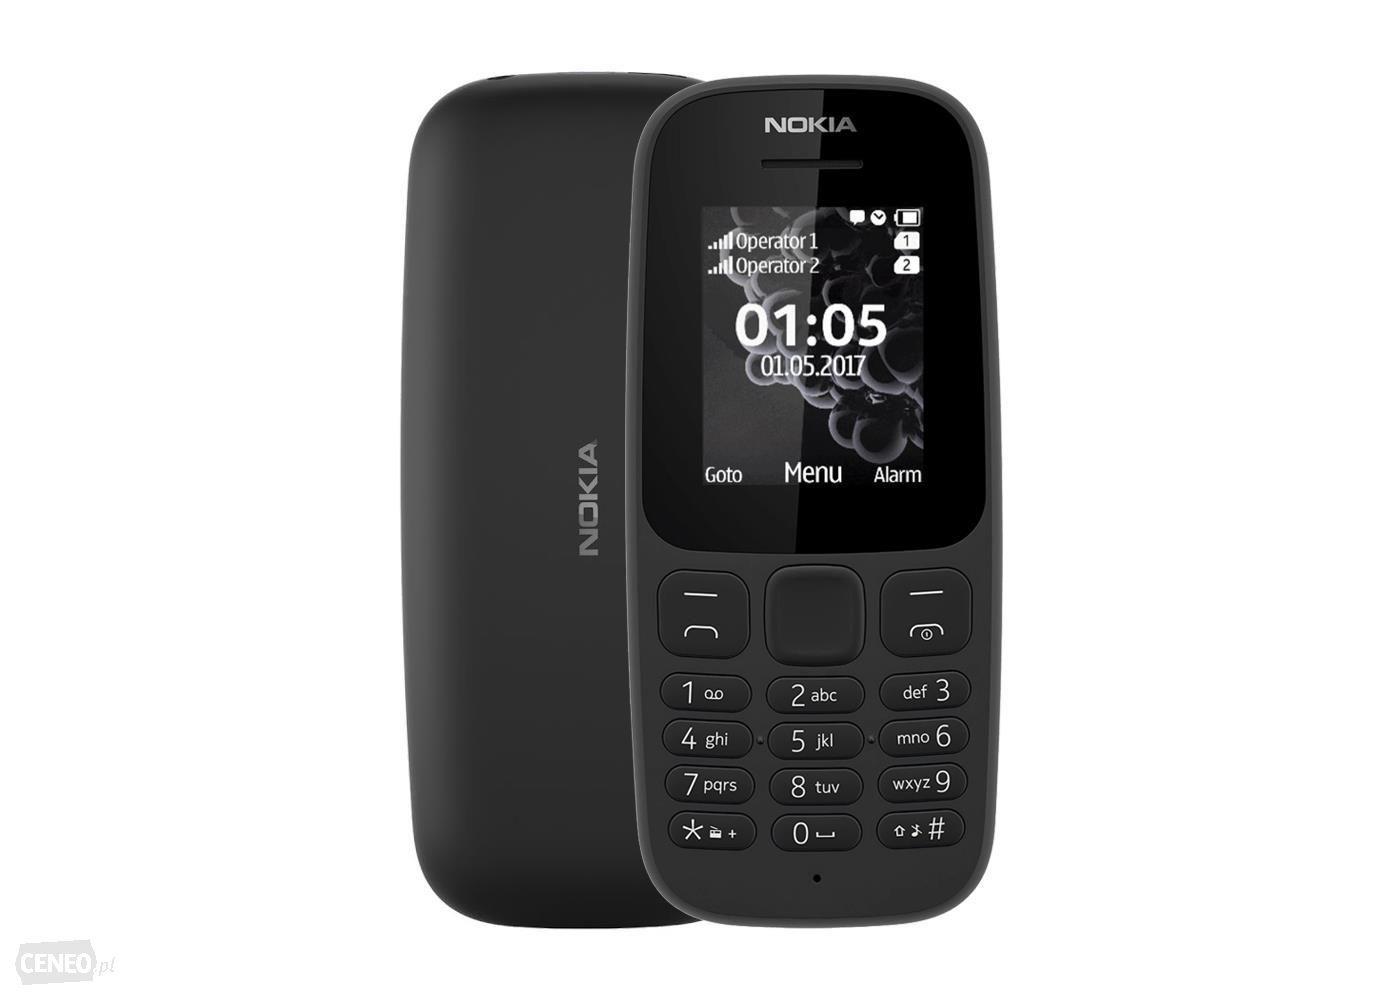 Telefon Nokia 105 2017 - nowy